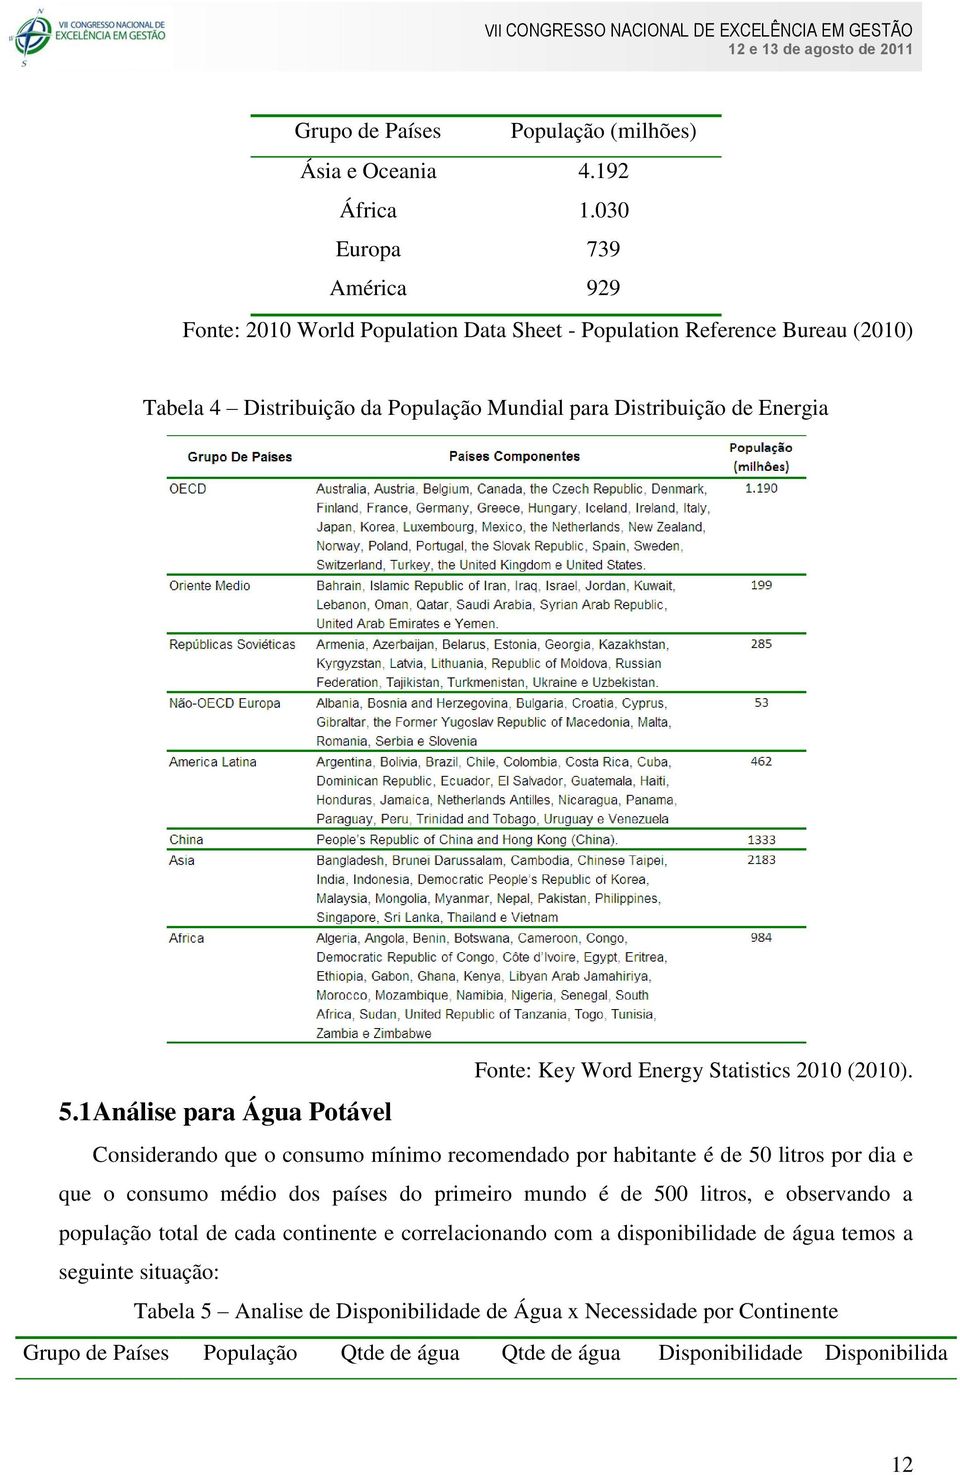 1 Análise para Água Potável Fonte: Key Word Energy Statistics 2010 (2010).